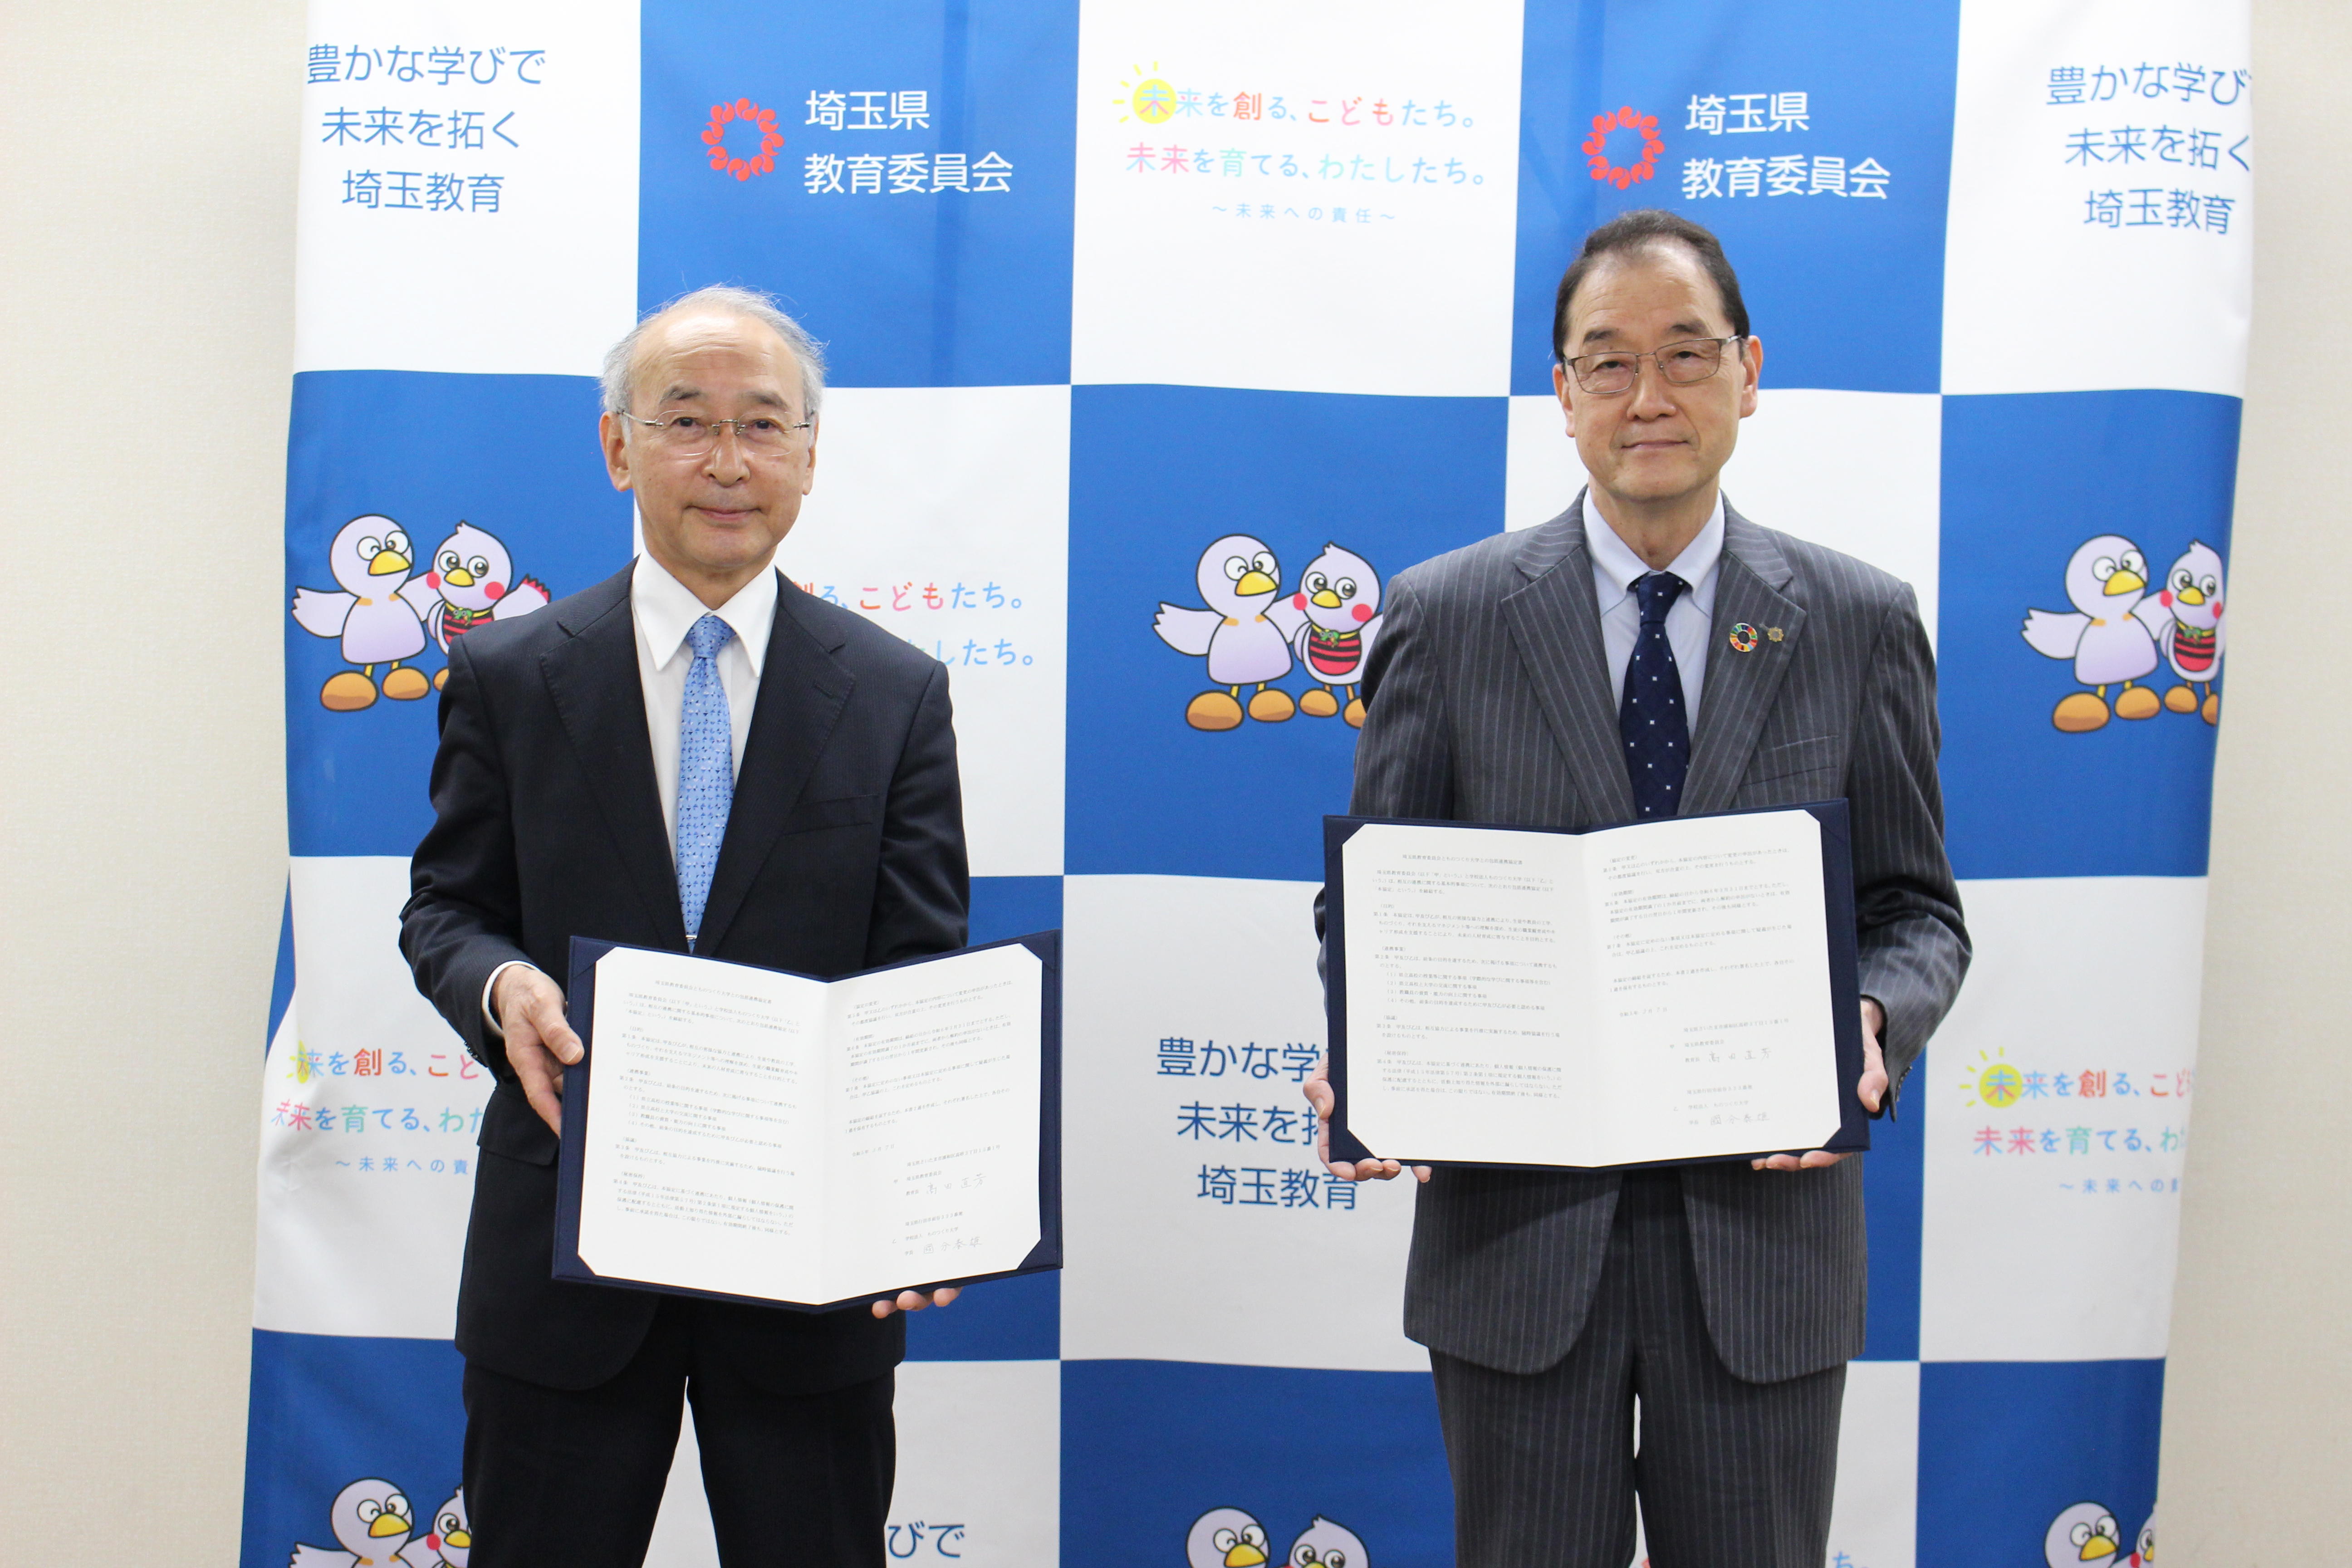 埼玉県教育委員会とものつくり大学が包括連携協定を締結しました。